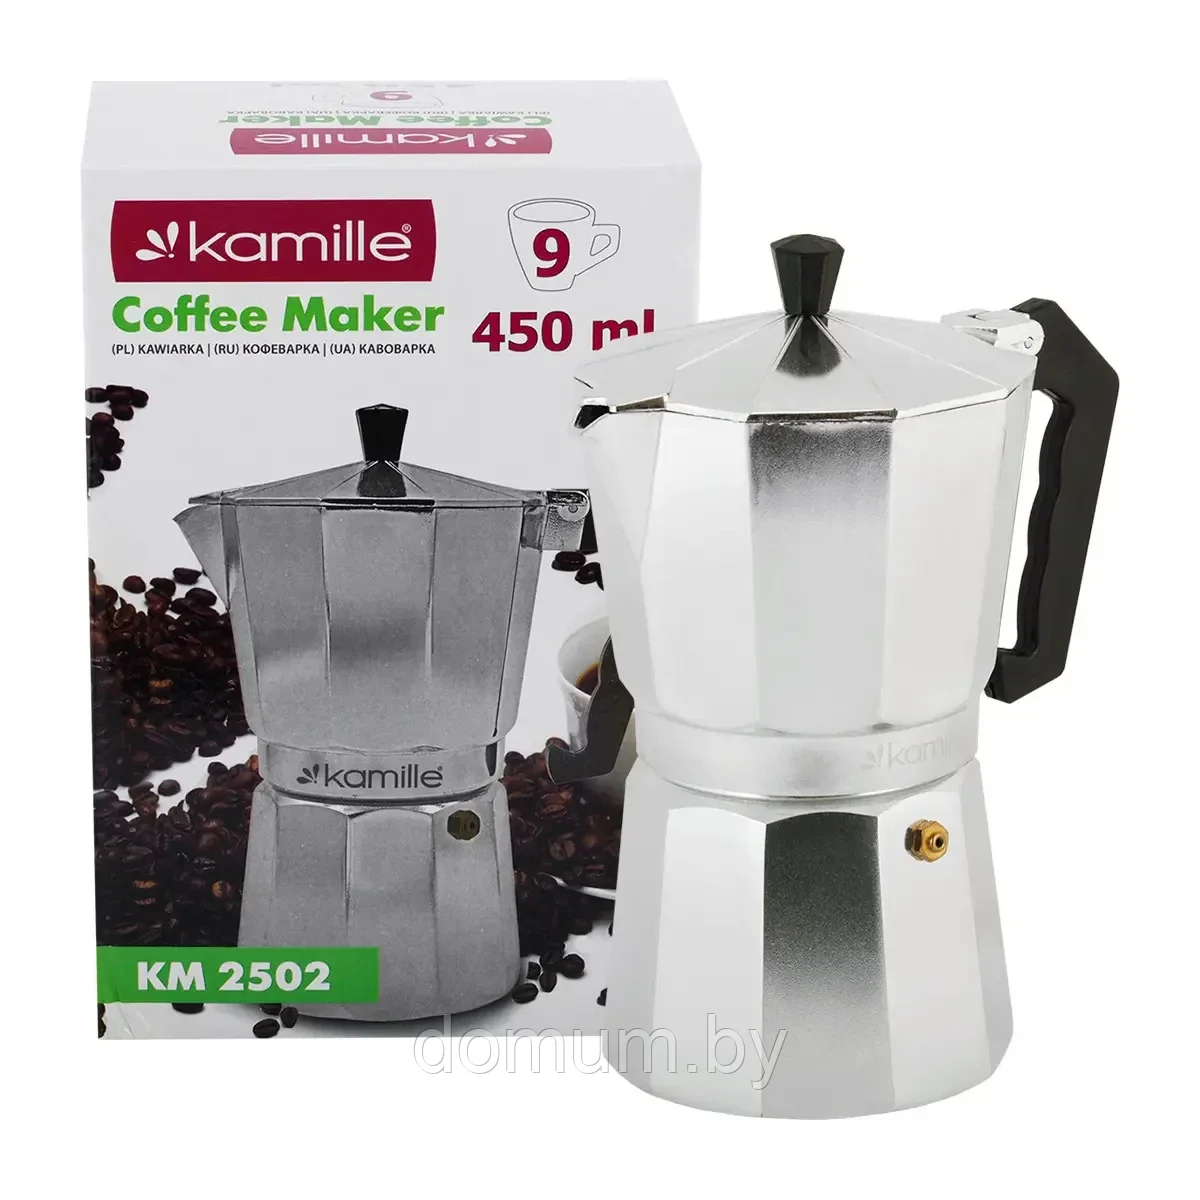 Гейзерная кофеварка Kamille 450мл (9 порций) из алюминия KM-2502